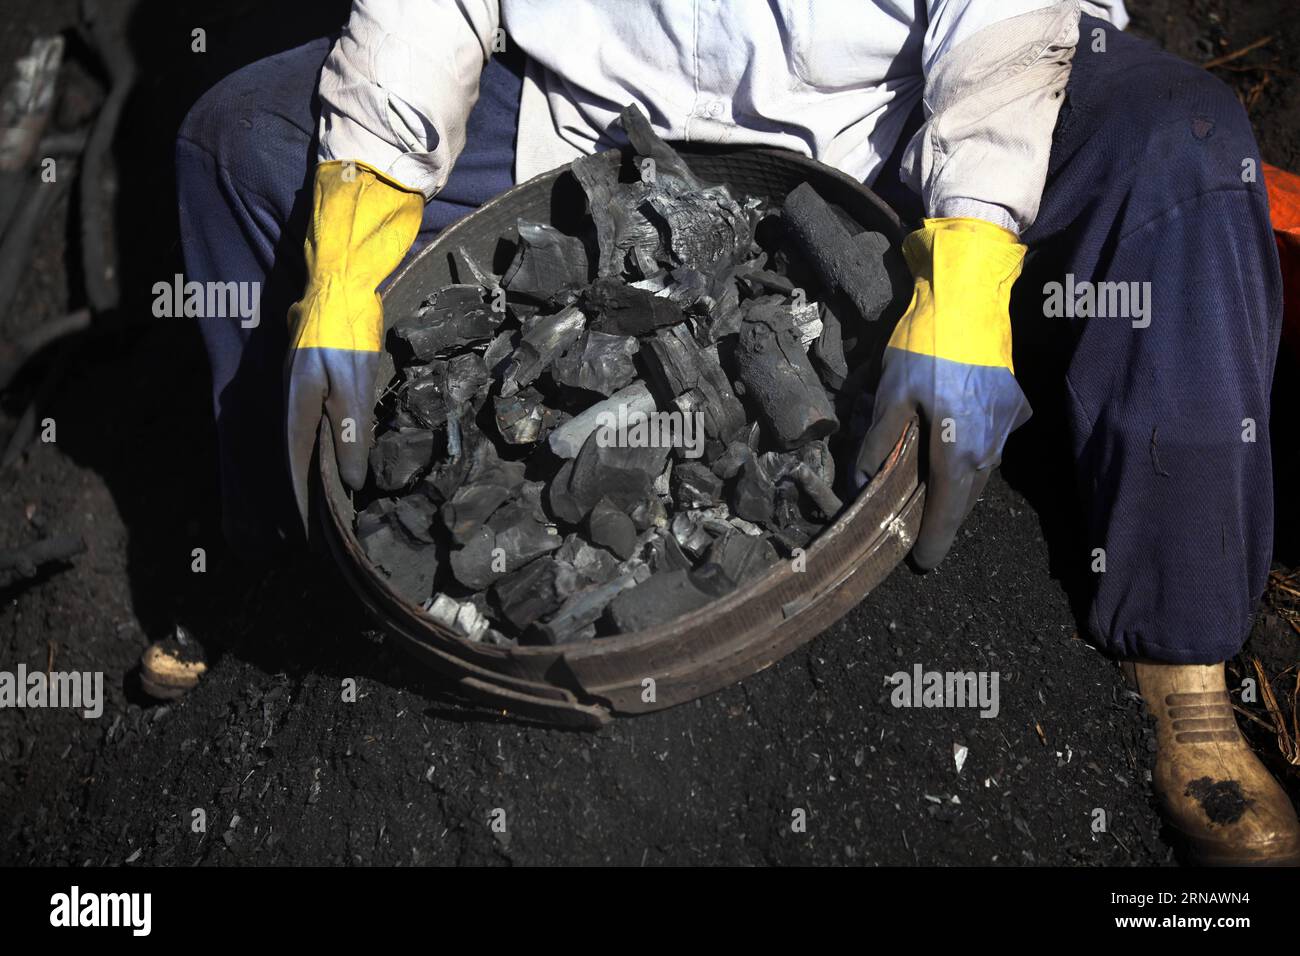 Un ouvrier égyptien montre du charbon dans une usine de charbon de bois à Sharqia, en Égypte, le 7 février 2016. Il y avait environ 300 usines de charbon en Egypte avec plus de 5 000 travailleurs employés. Mais le gouvernement égyptien en ferme maintenant beaucoup pour réduire la pollution environnementale causée par les unités industrielles de charbon de bois. )(zhf) EGYPTE-SHARQIA-PRODUCTION DE CHARBON AhmedxGomaa PUBLICATIONxNOTxINxCHN à un travailleur égyptien du charbon montre du charbon À une usine de charbon à Sharqia Egypte LE 7 2016 février, il y avait environ 300 usines de charbon en Egypte avec plus de 5 000 travailleurs employés, mais le gouvernement égyptien Banque D'Images